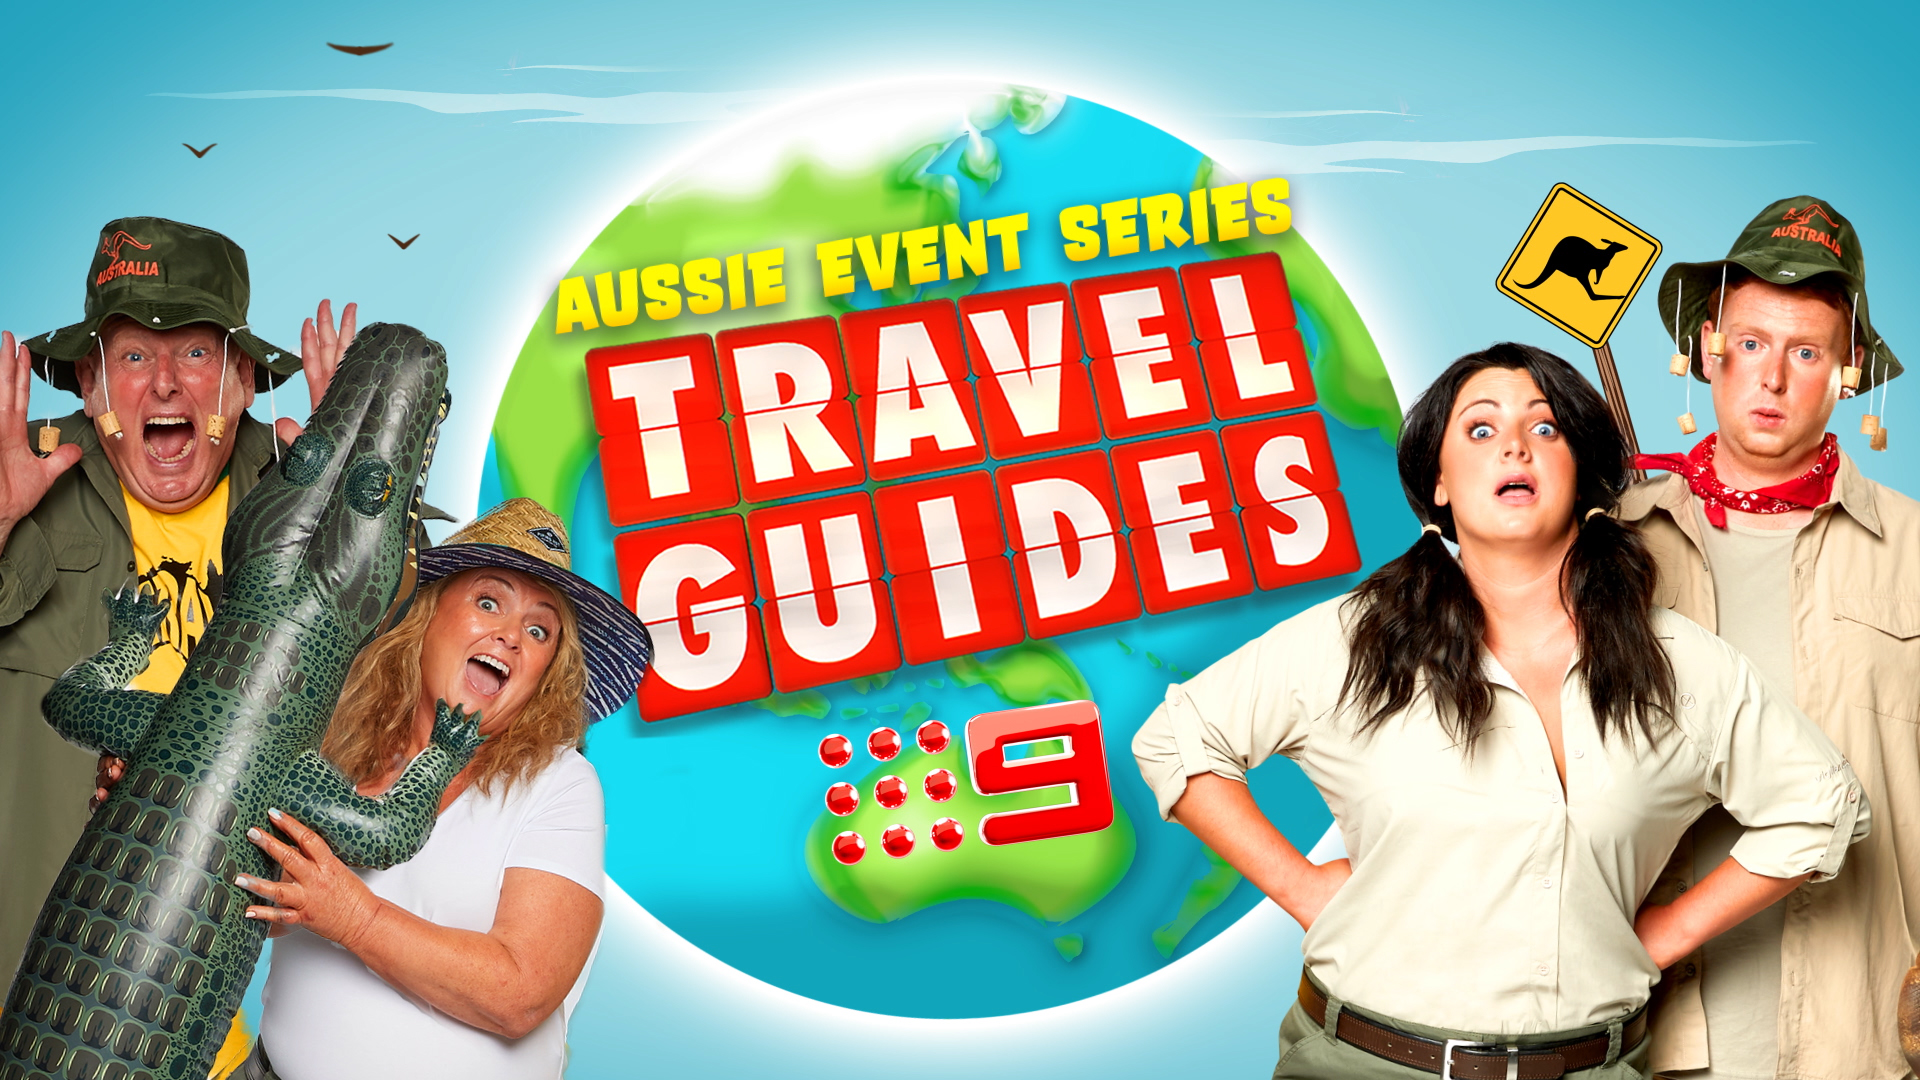 travel guides show australia